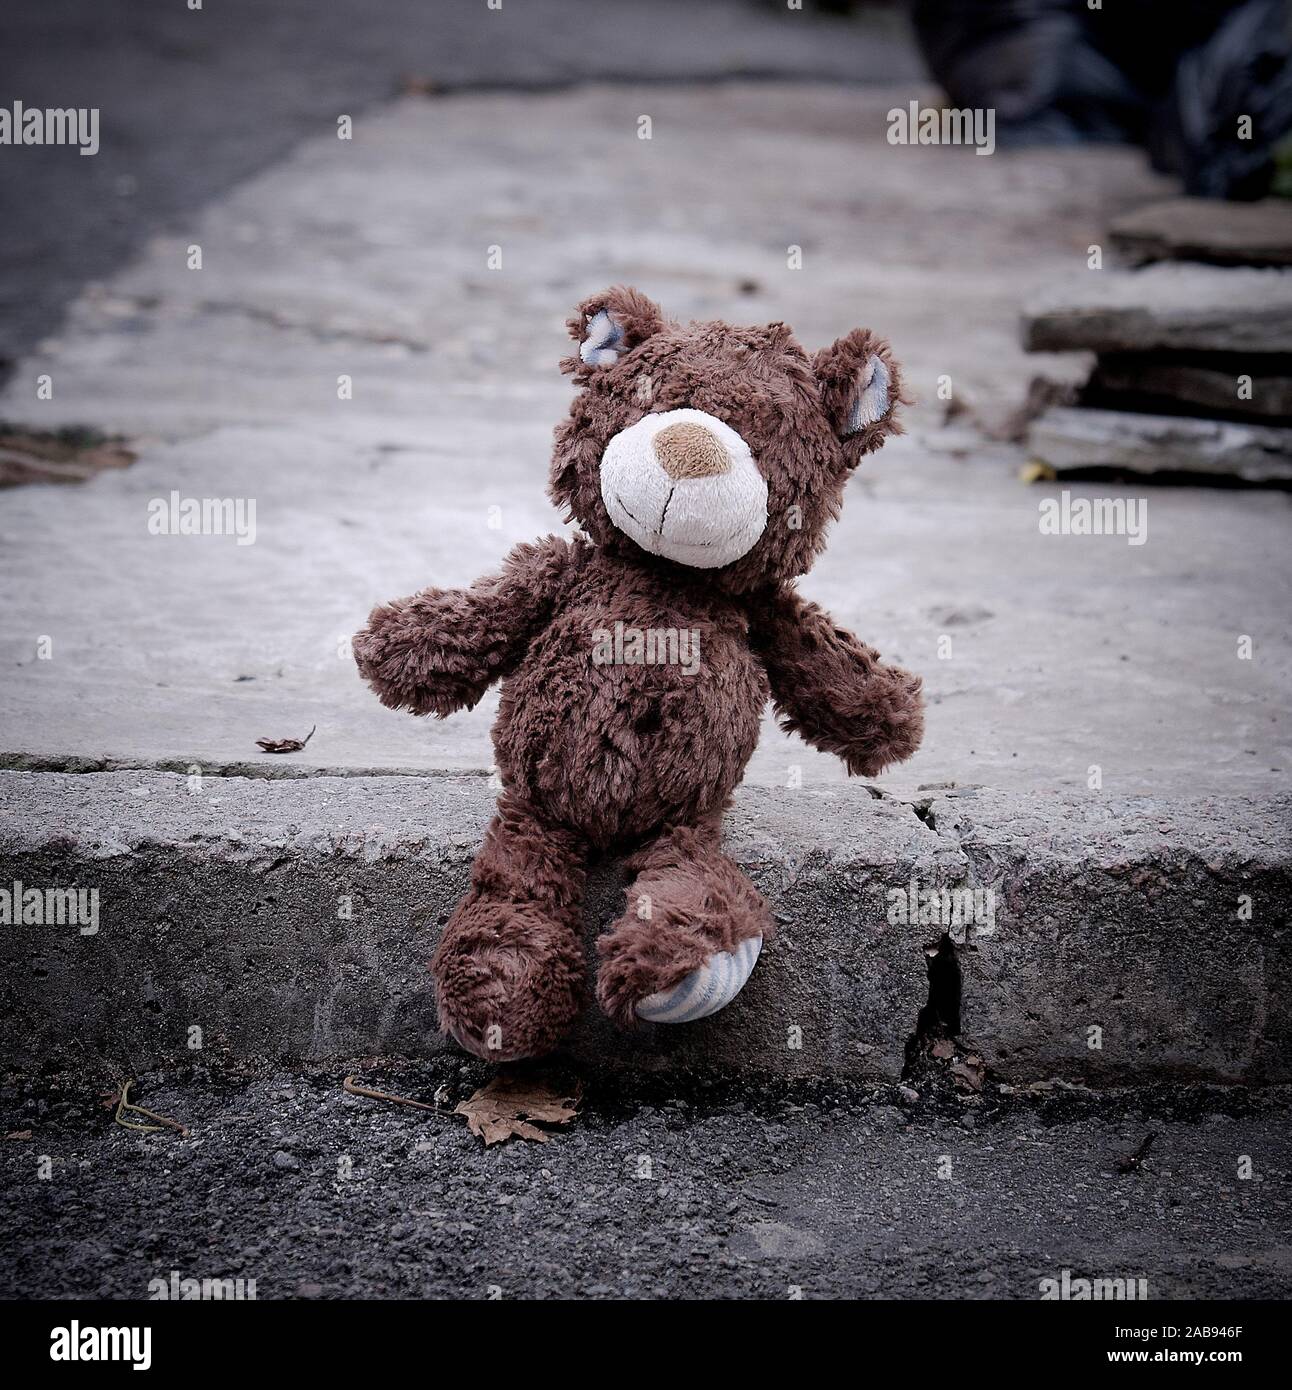 Kleiner Teddybär, sitzend auf der Seite der Straße während des Tages,  Einsamkeit Konzept Stockfotografie - Alamy